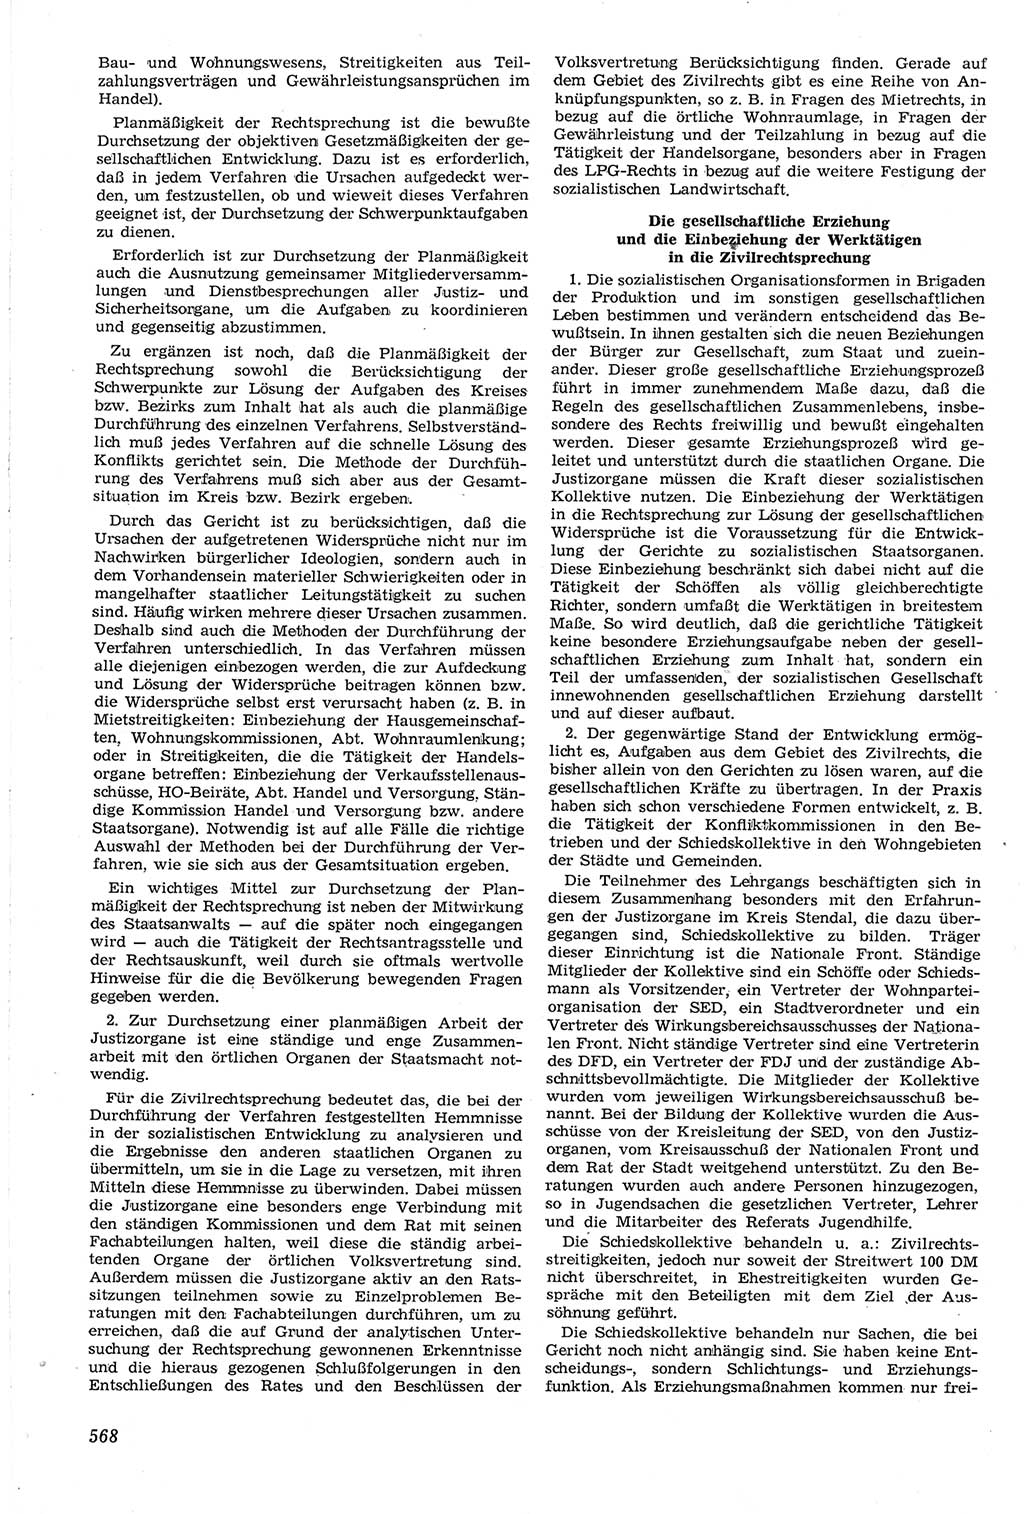 Neue Justiz (NJ), Zeitschrift für Recht und Rechtswissenschaft [Deutsche Demokratische Republik (DDR)], 14. Jahrgang 1960, Seite 568 (NJ DDR 1960, S. 568)